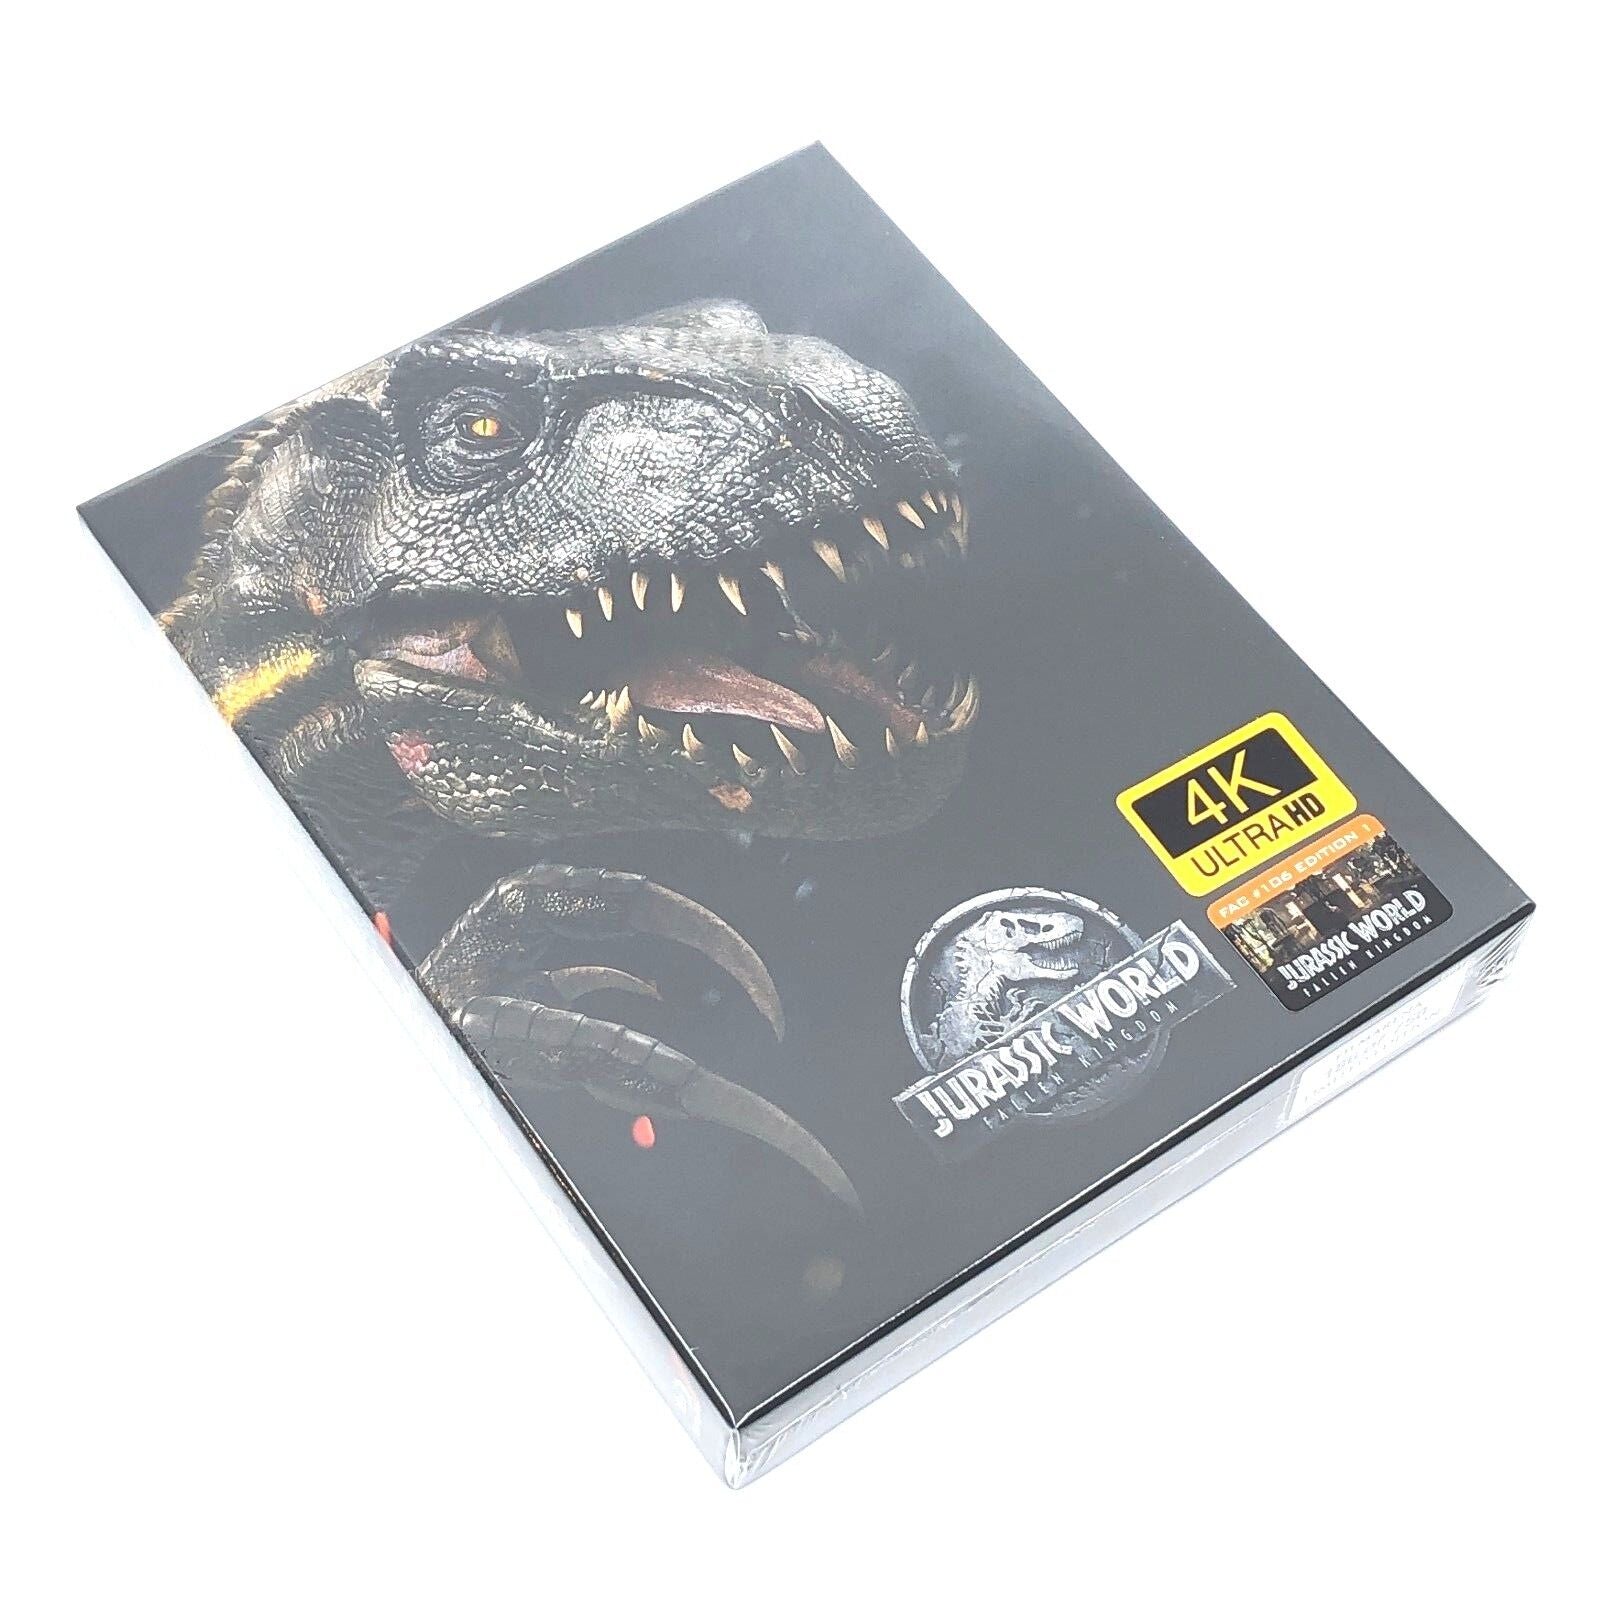 Jurassic World: Fallen Kingdom - 4K Ultra HD Blu-ray Ultra HD Review